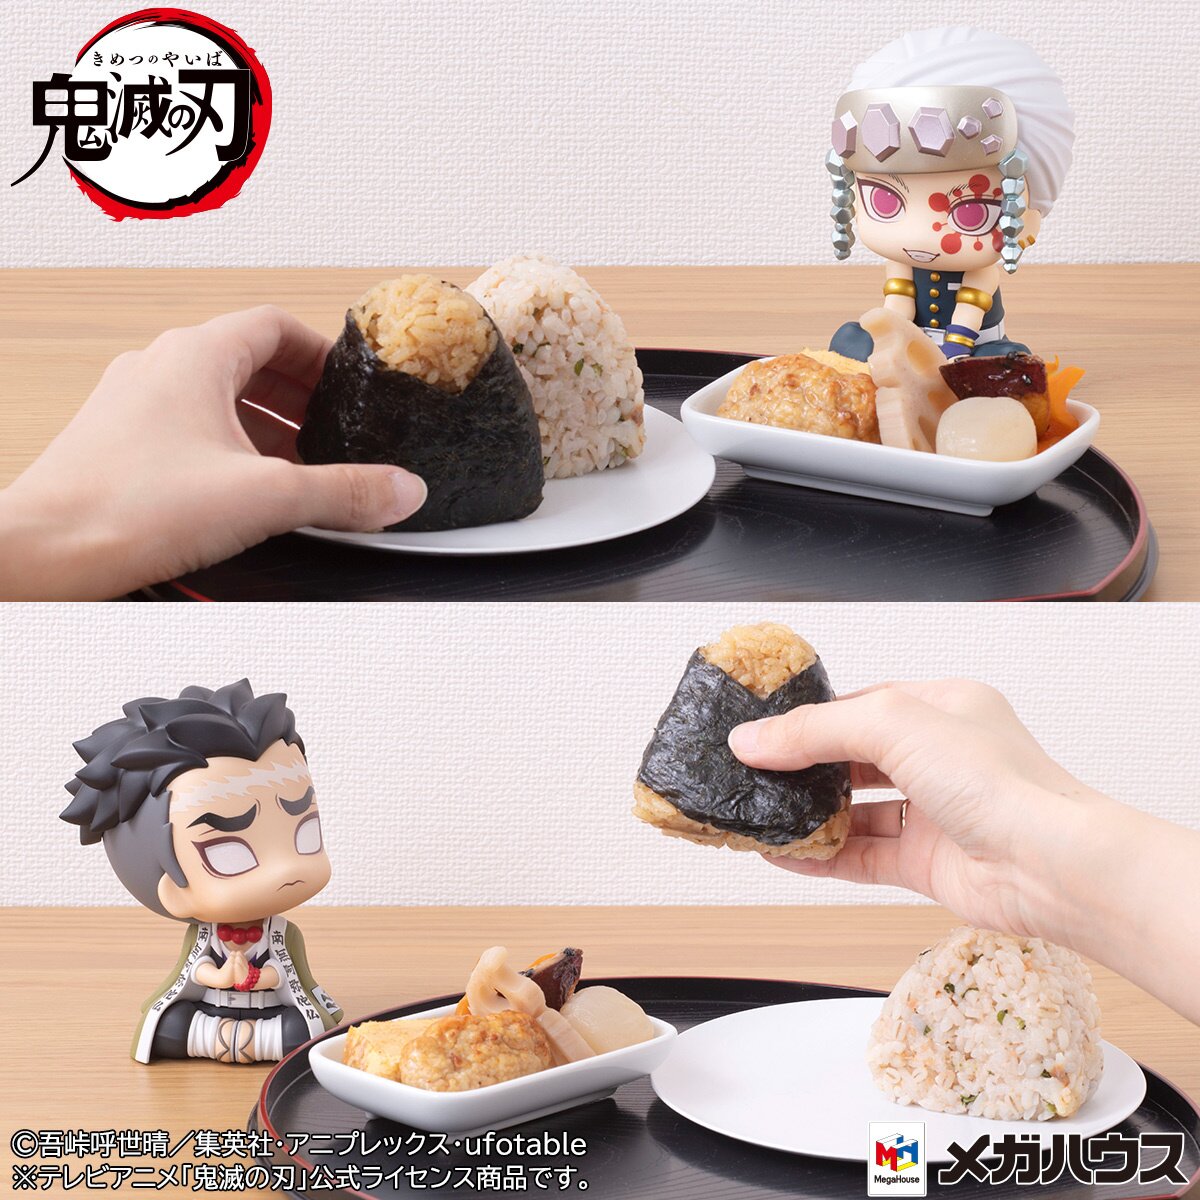 Jujutsu Kaisen  Anime cake, Japanese food art, Anime bento